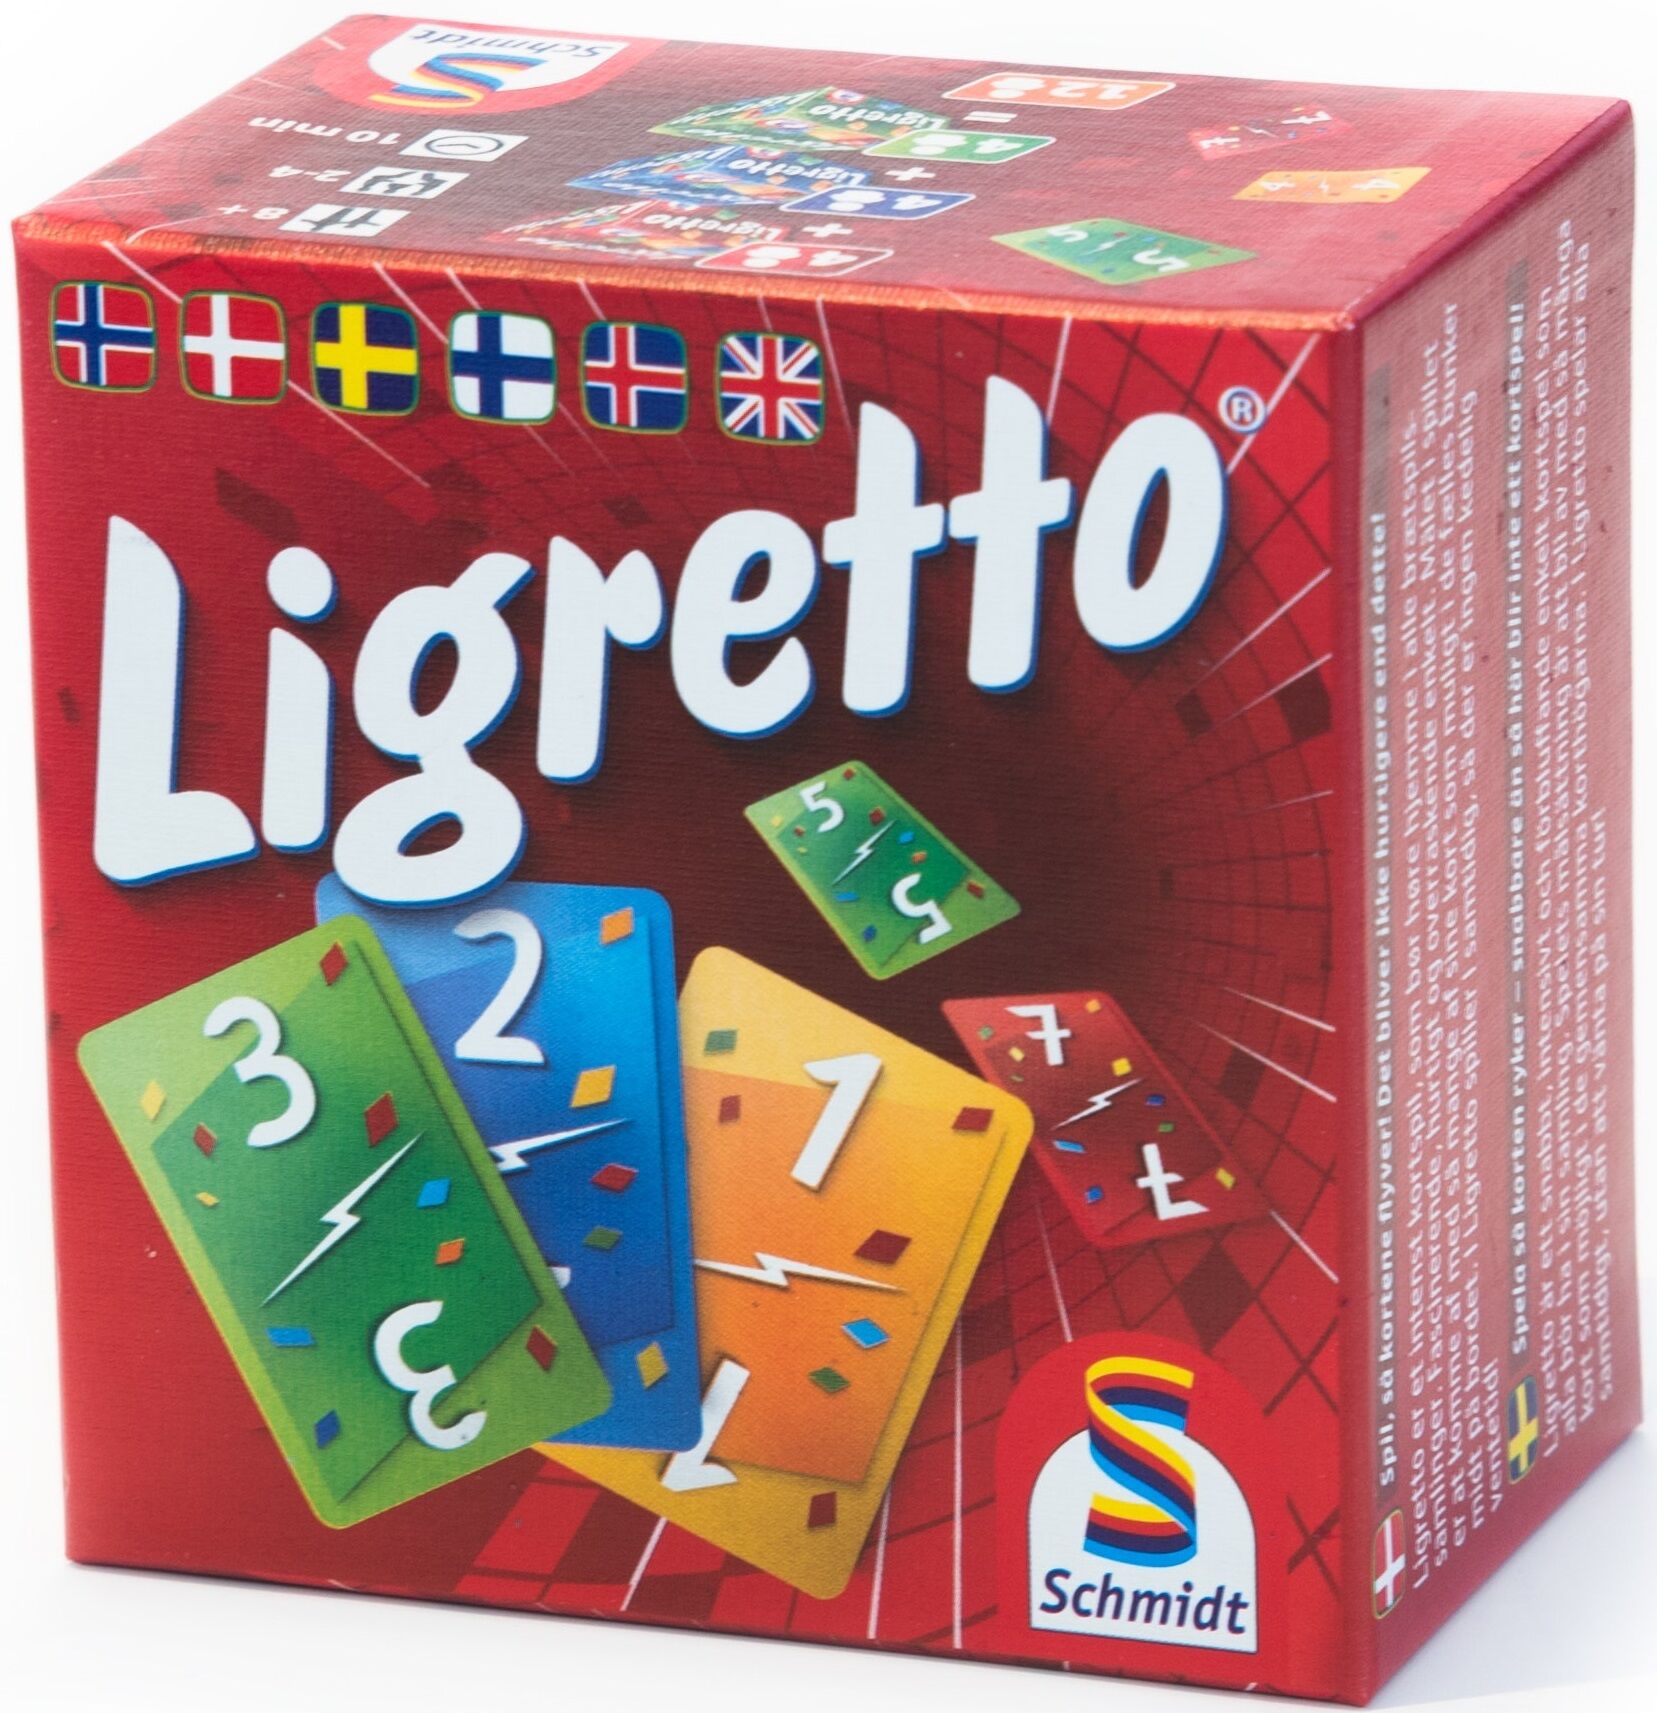 Ligretto Rød Kortspill - Norske regler Terningkast 6 i VG